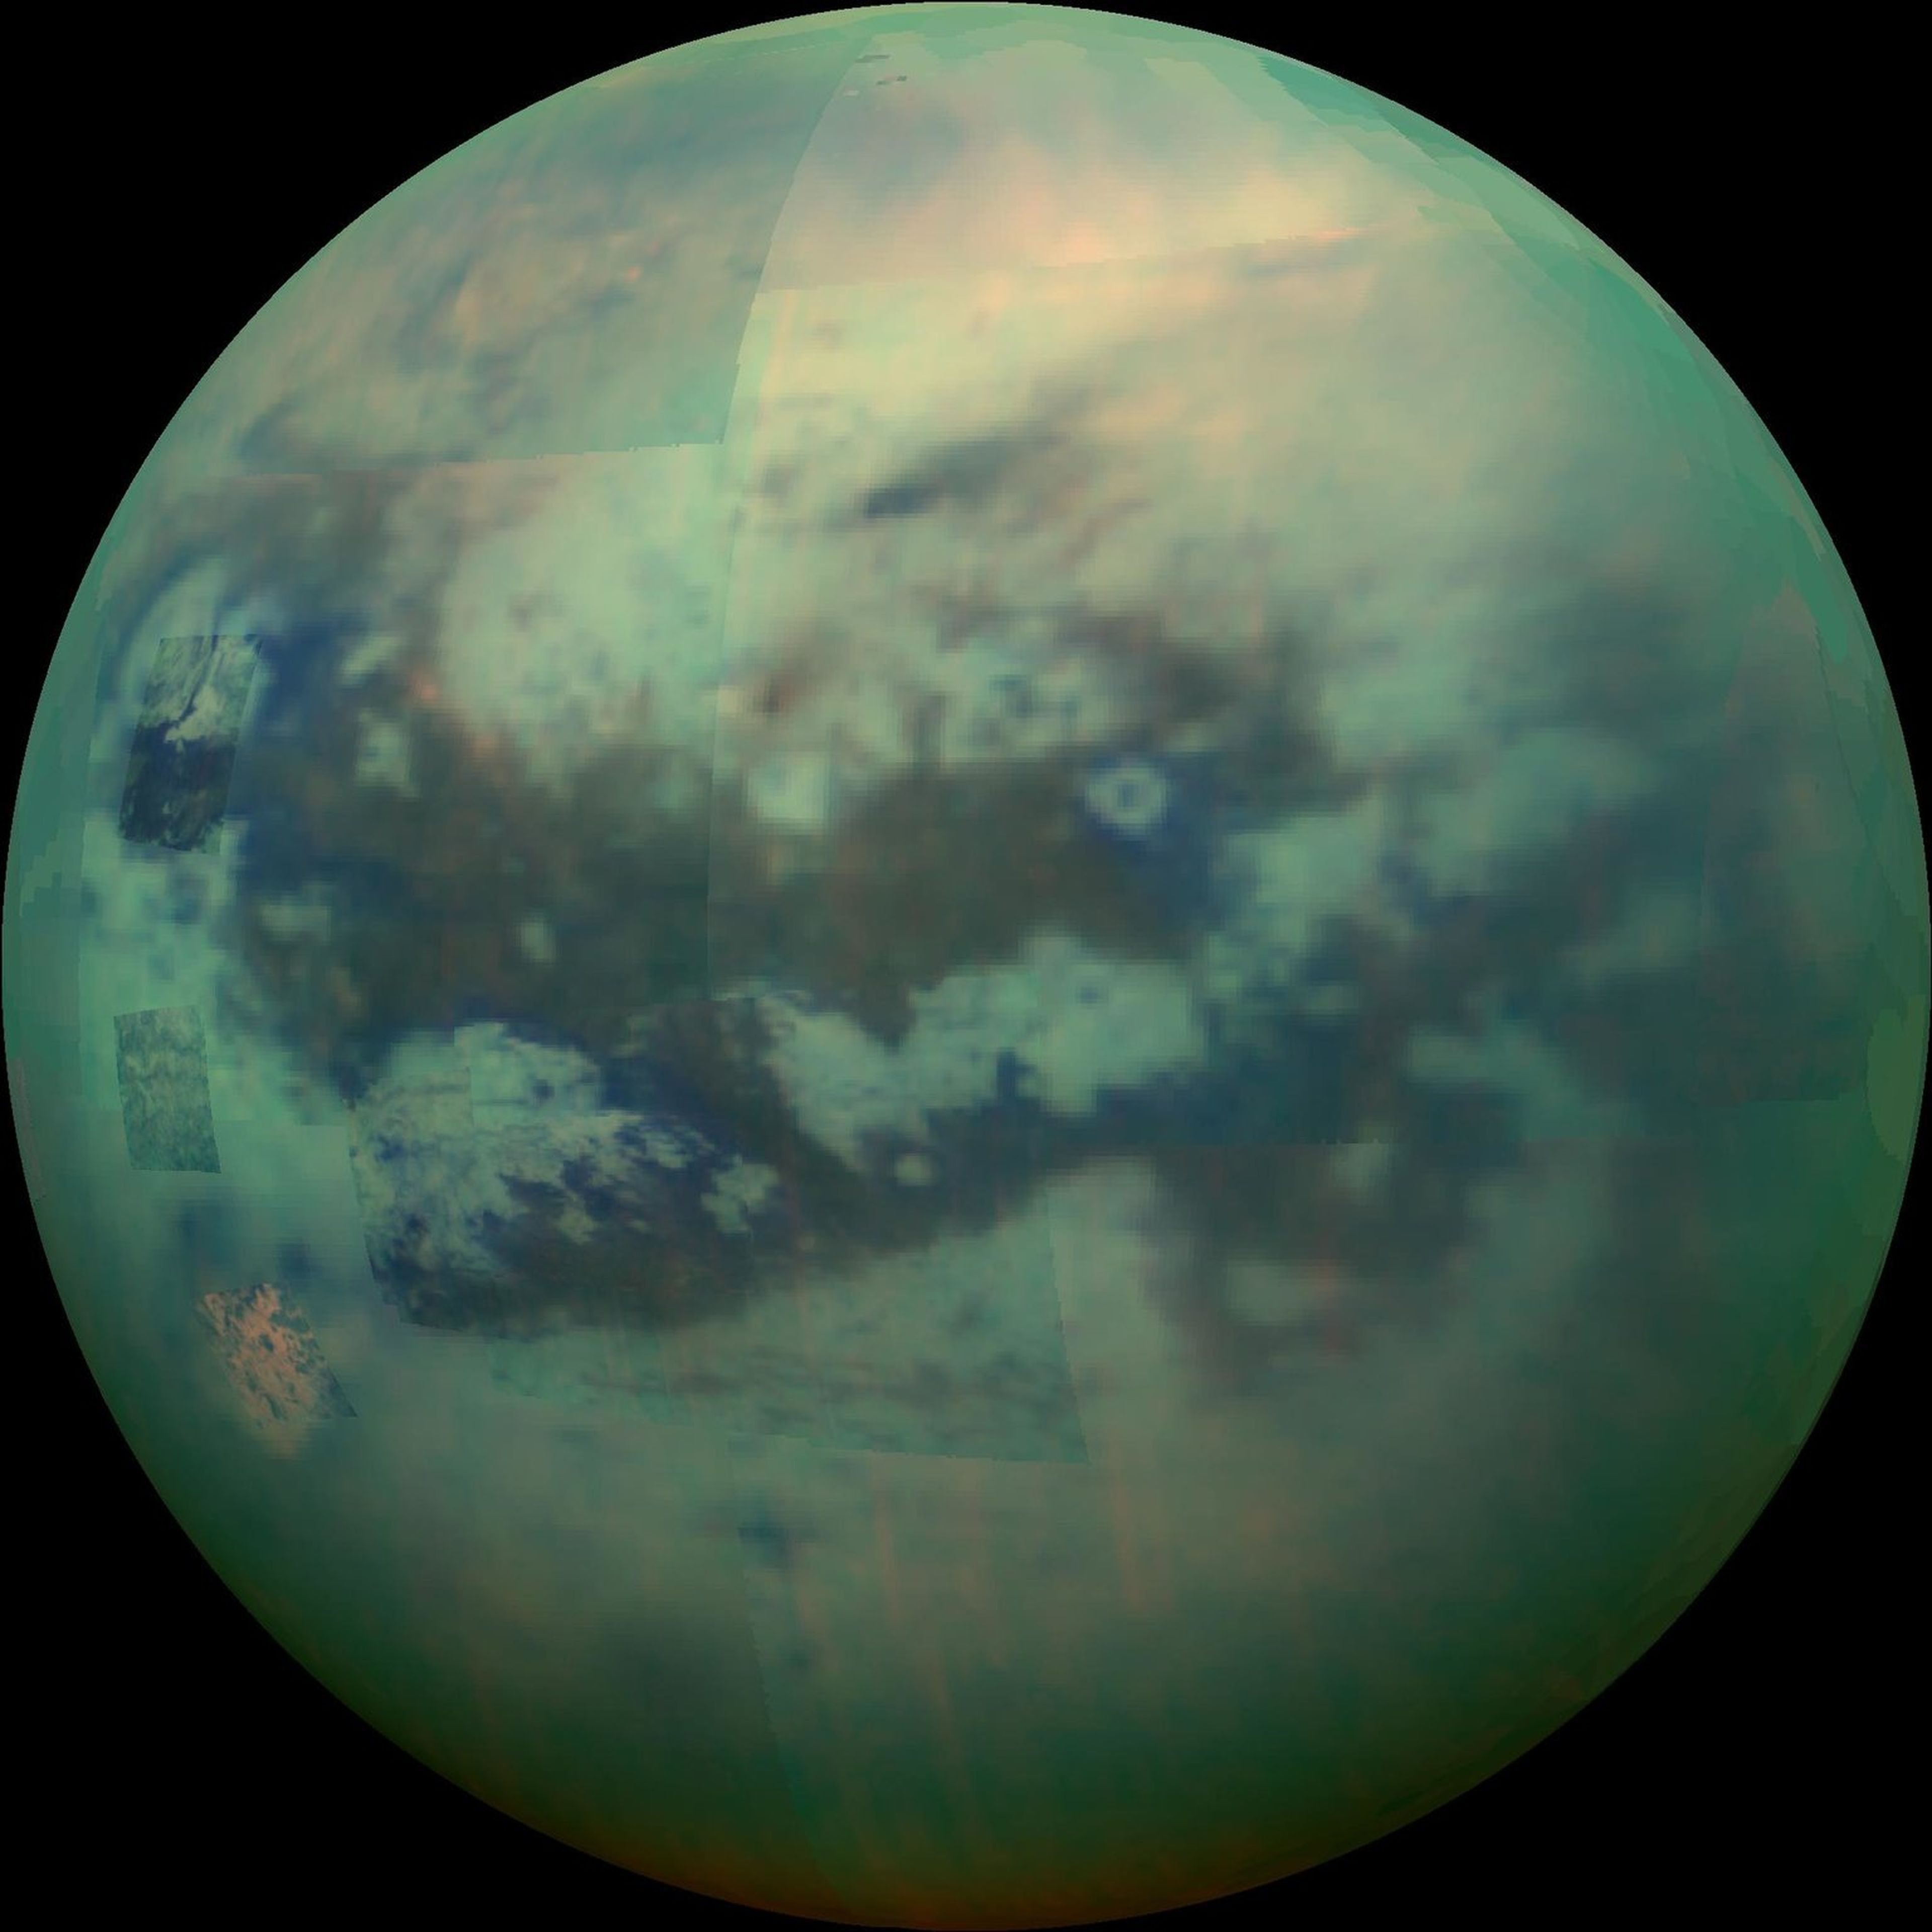 Una imagen coloreada artificialmente de la luna de Saturno, Titán, que muestra sus lagos, montañas y otras características de su superficie.